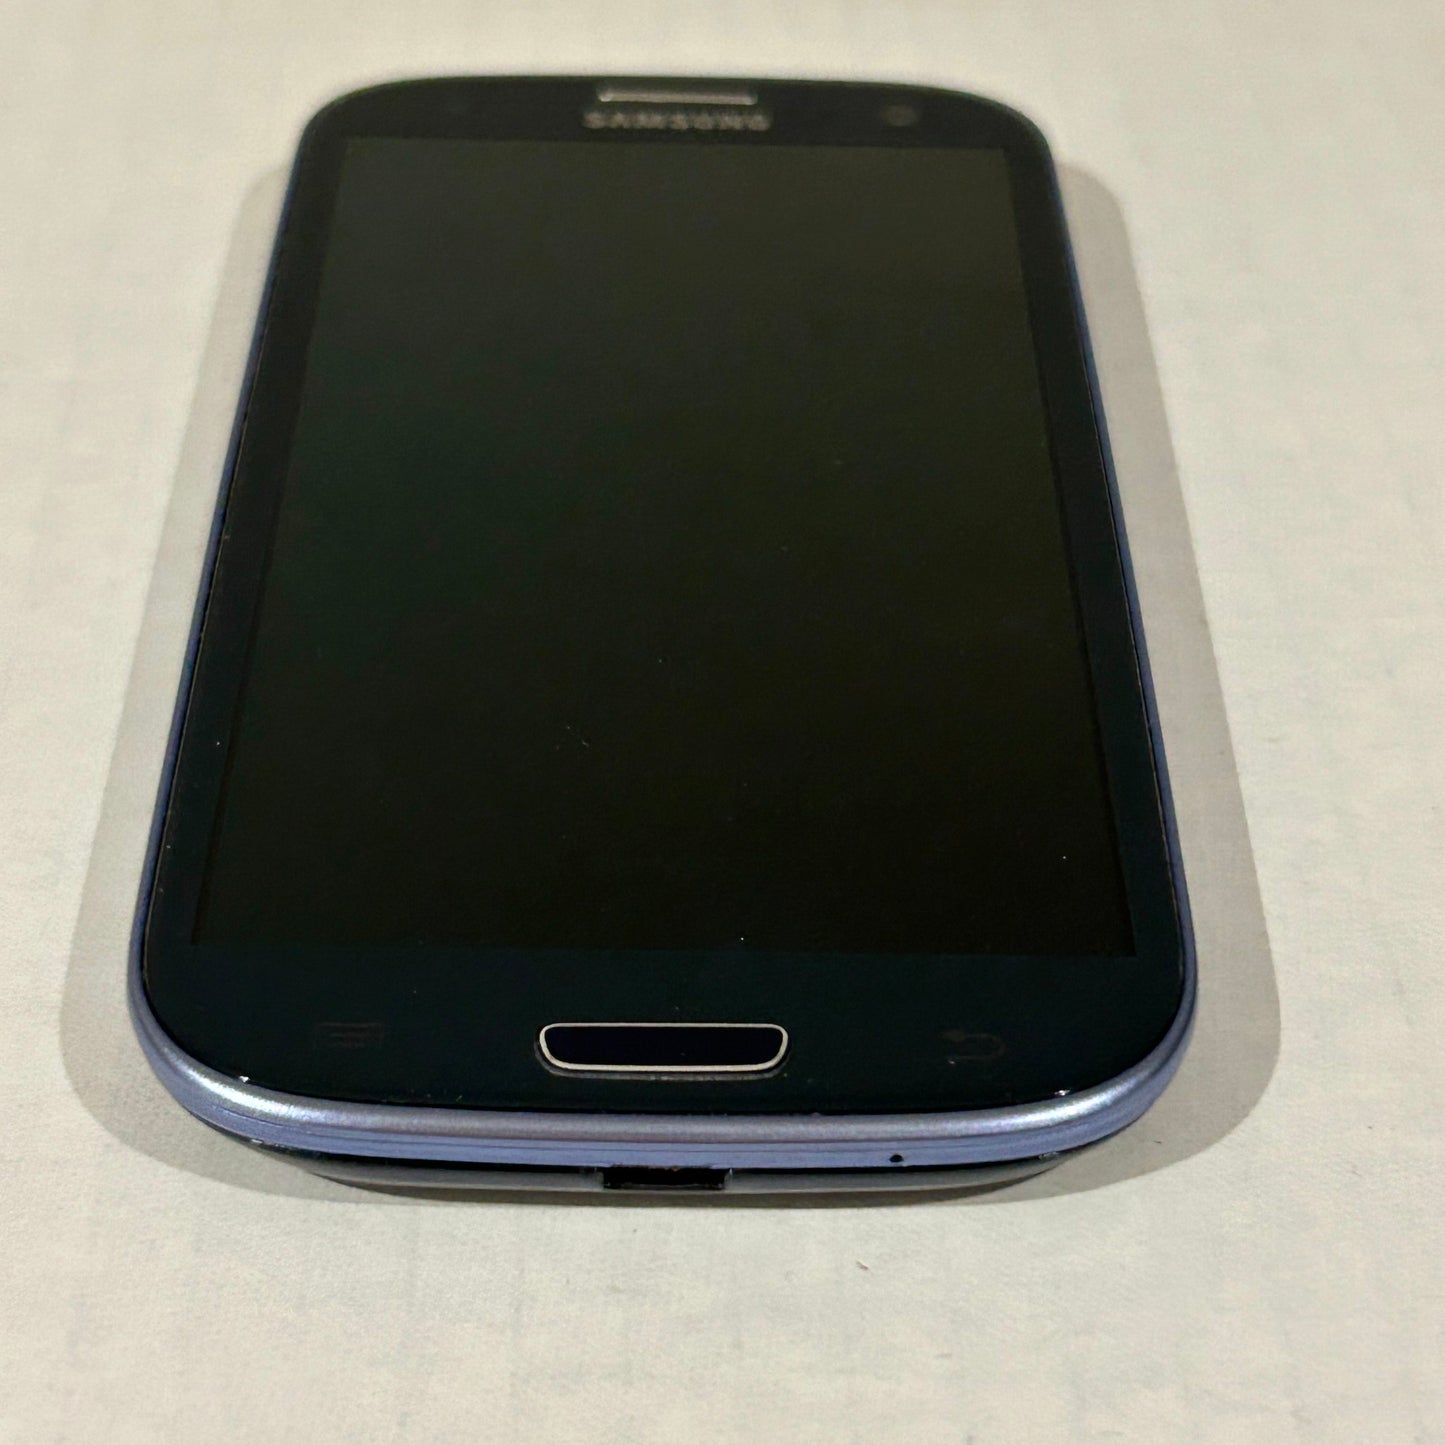 Blue Samsung Galaxy S3 16 GB - SGH-I747M